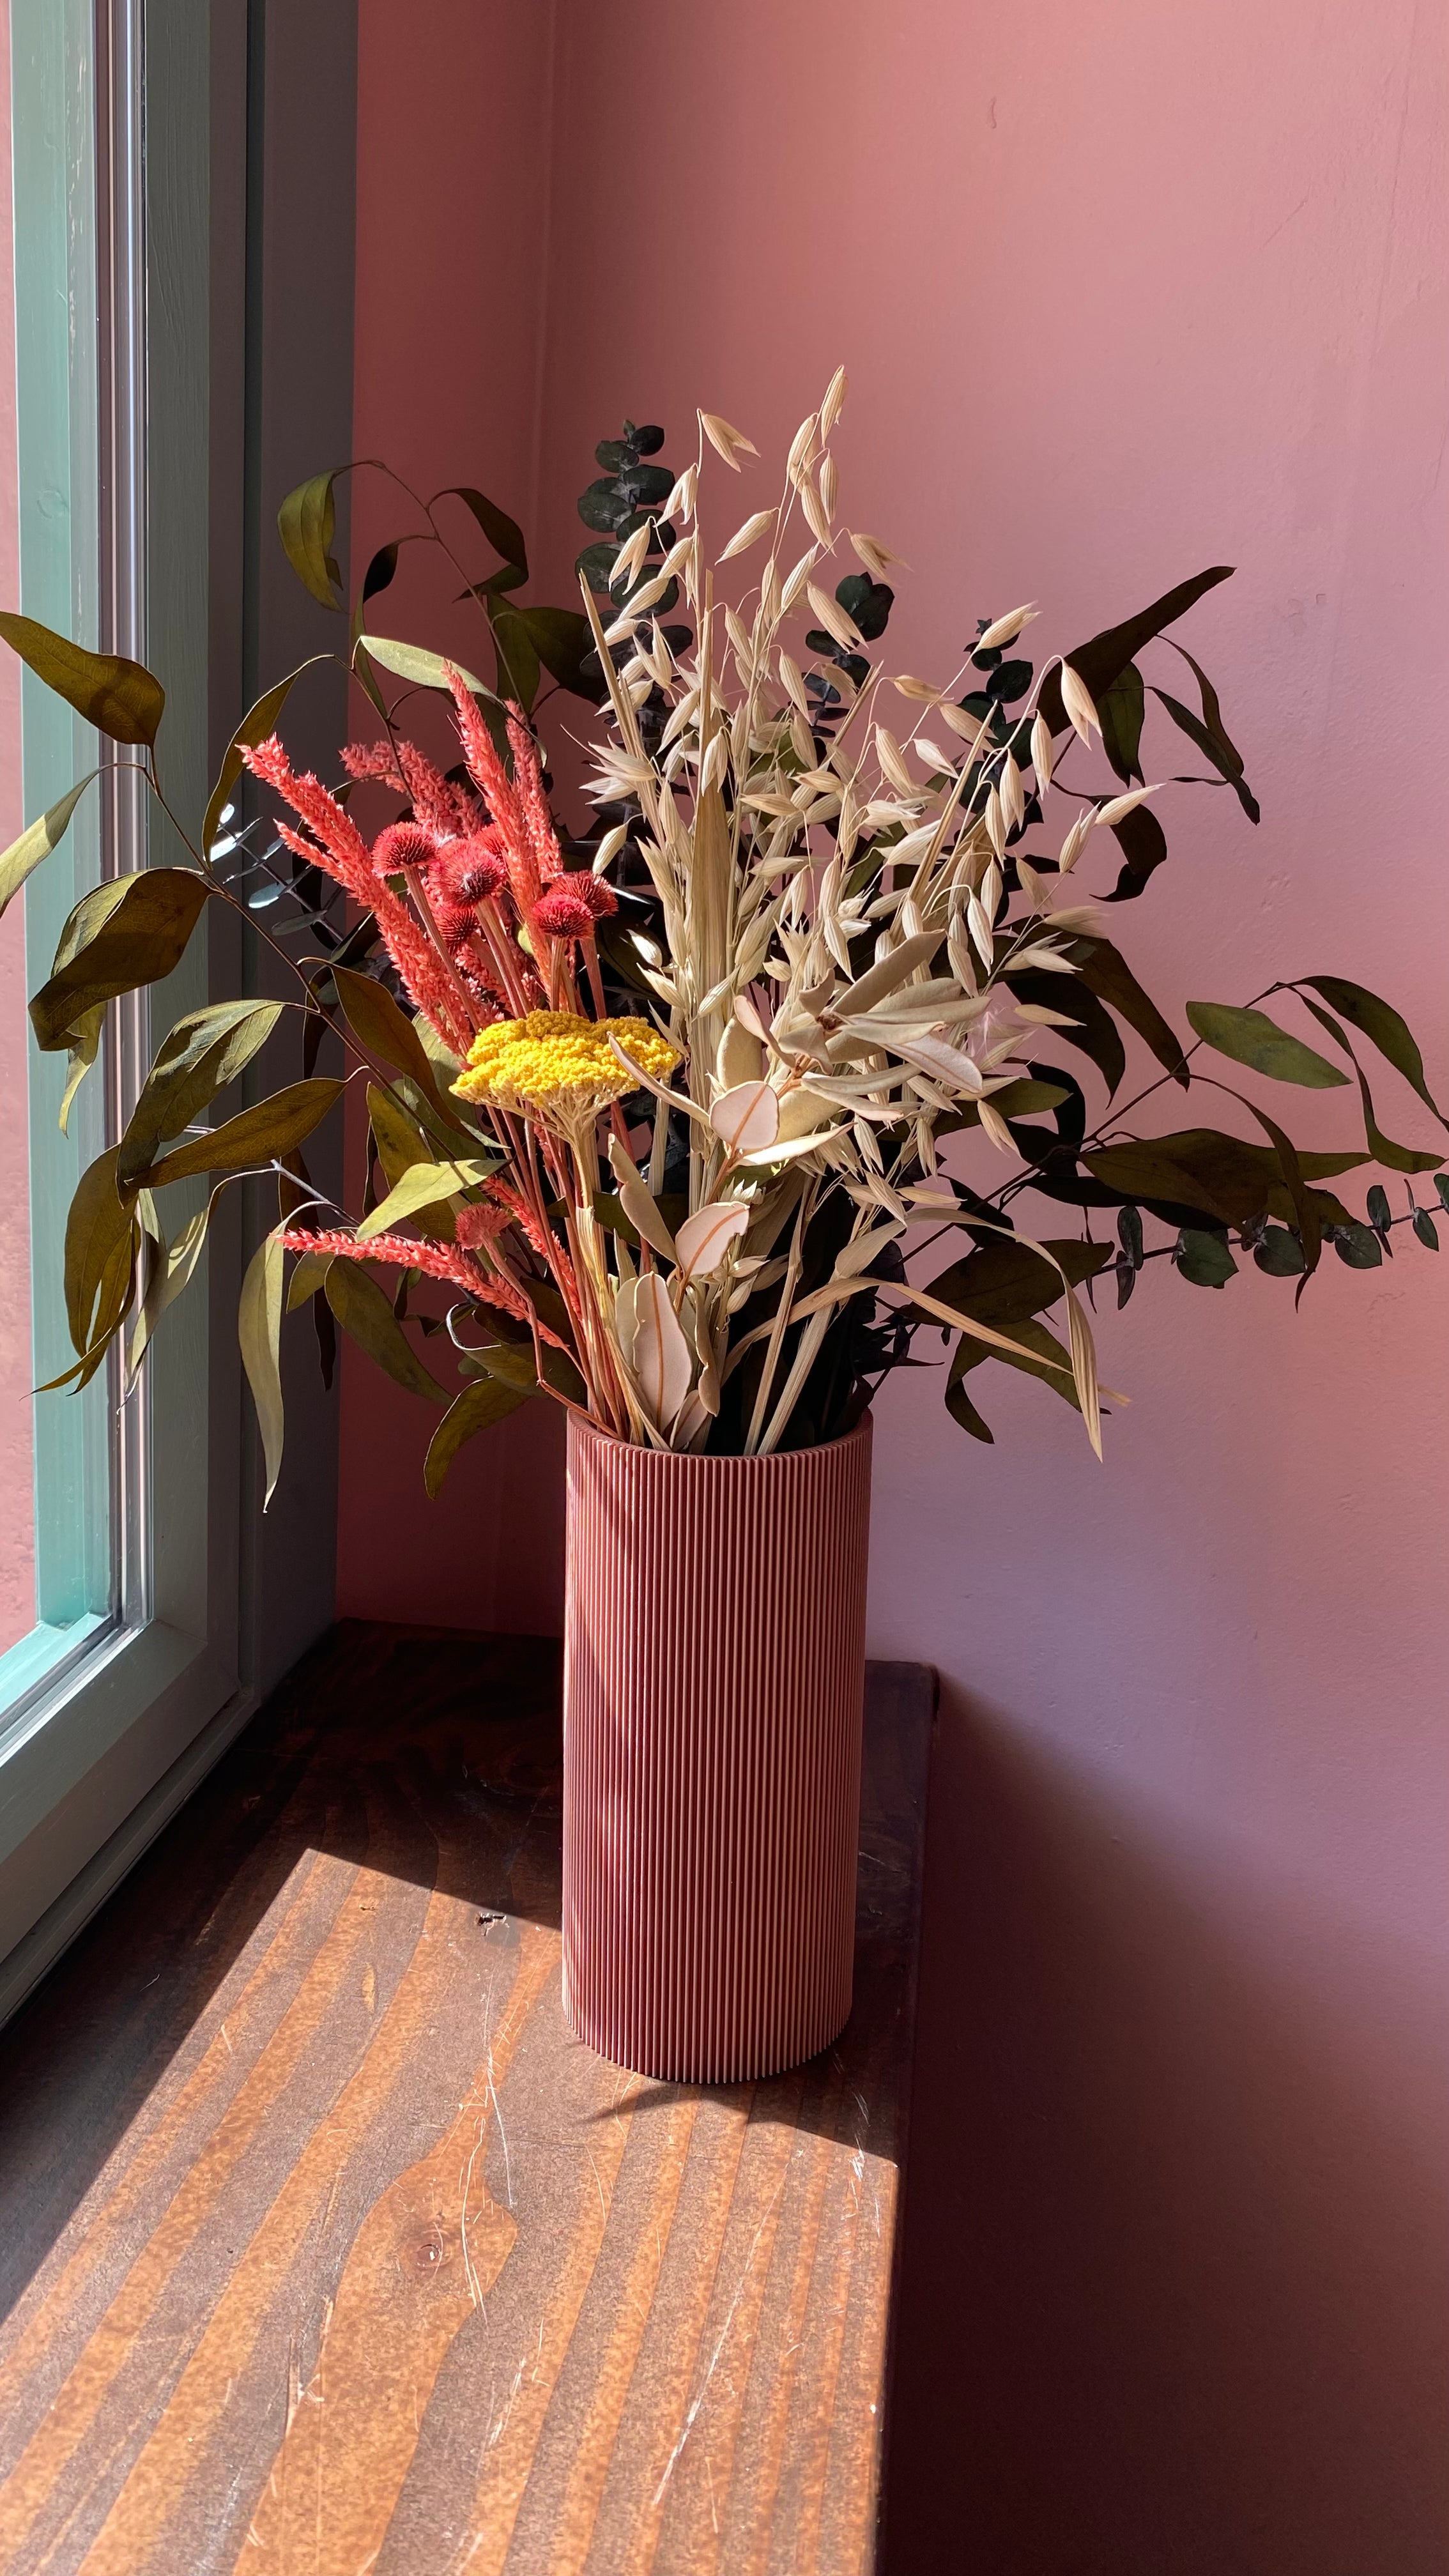 Dried Flowers in Pink Vase